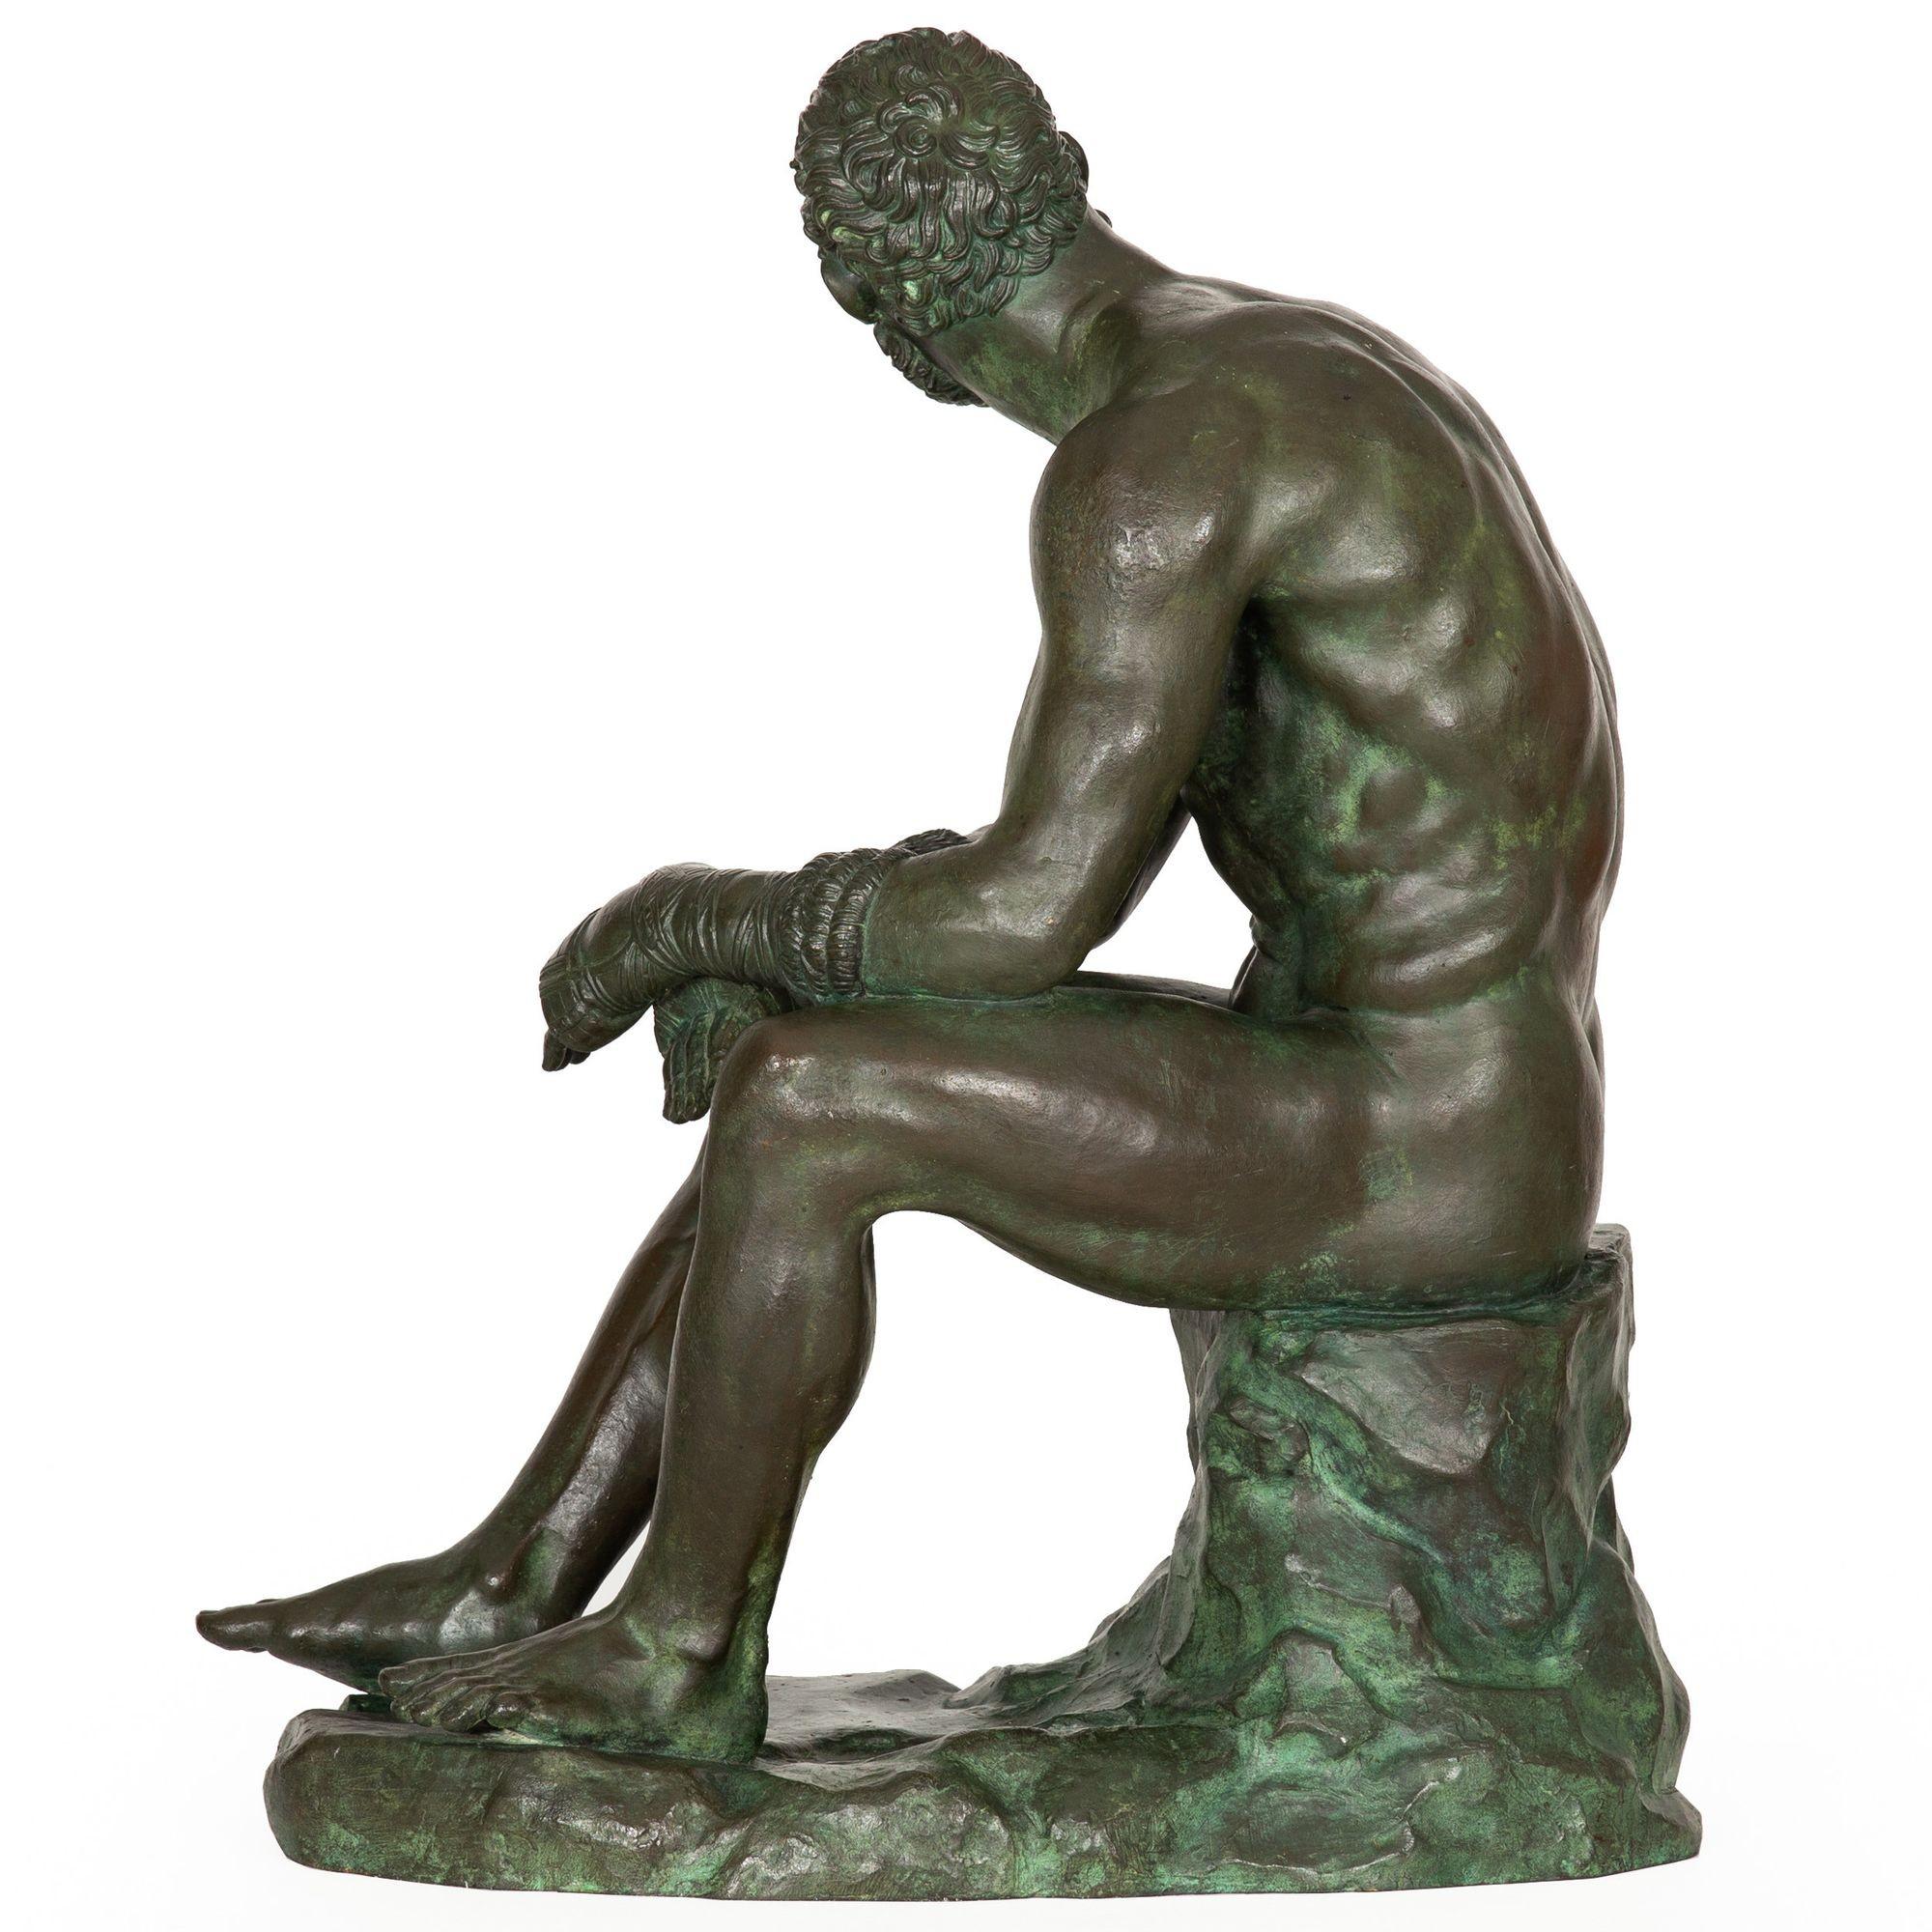 boxer at rest sculpture